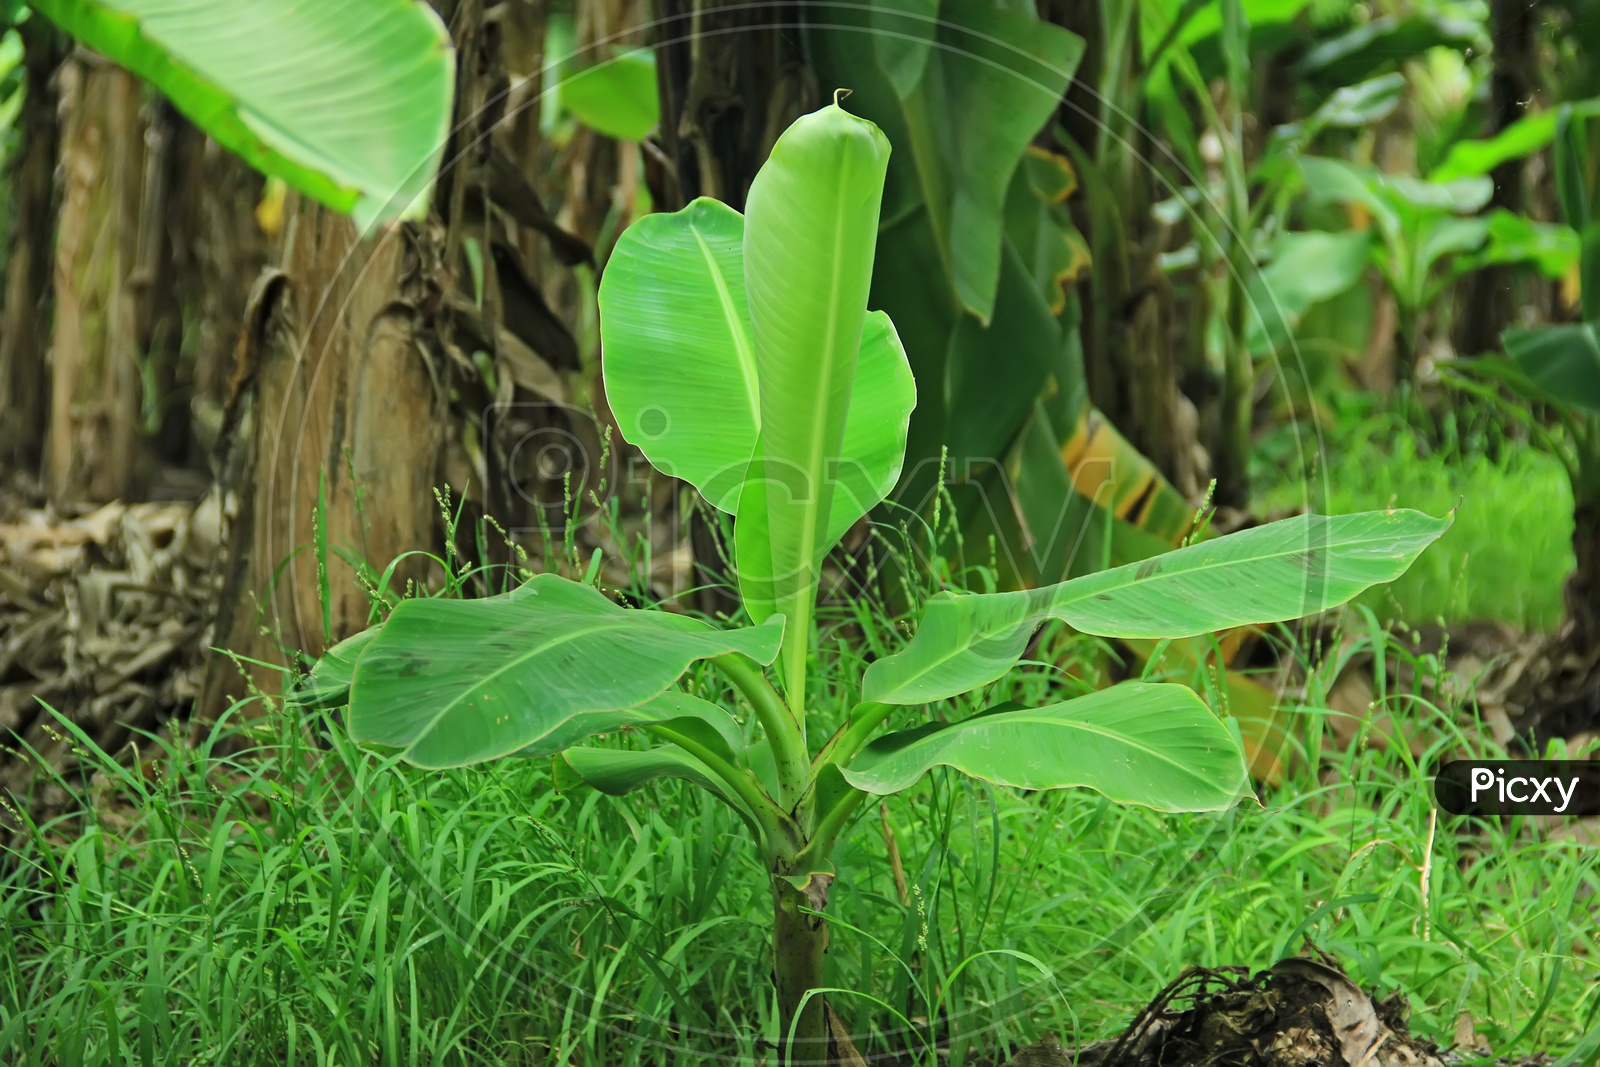 A Young Banana Plant in a Garden